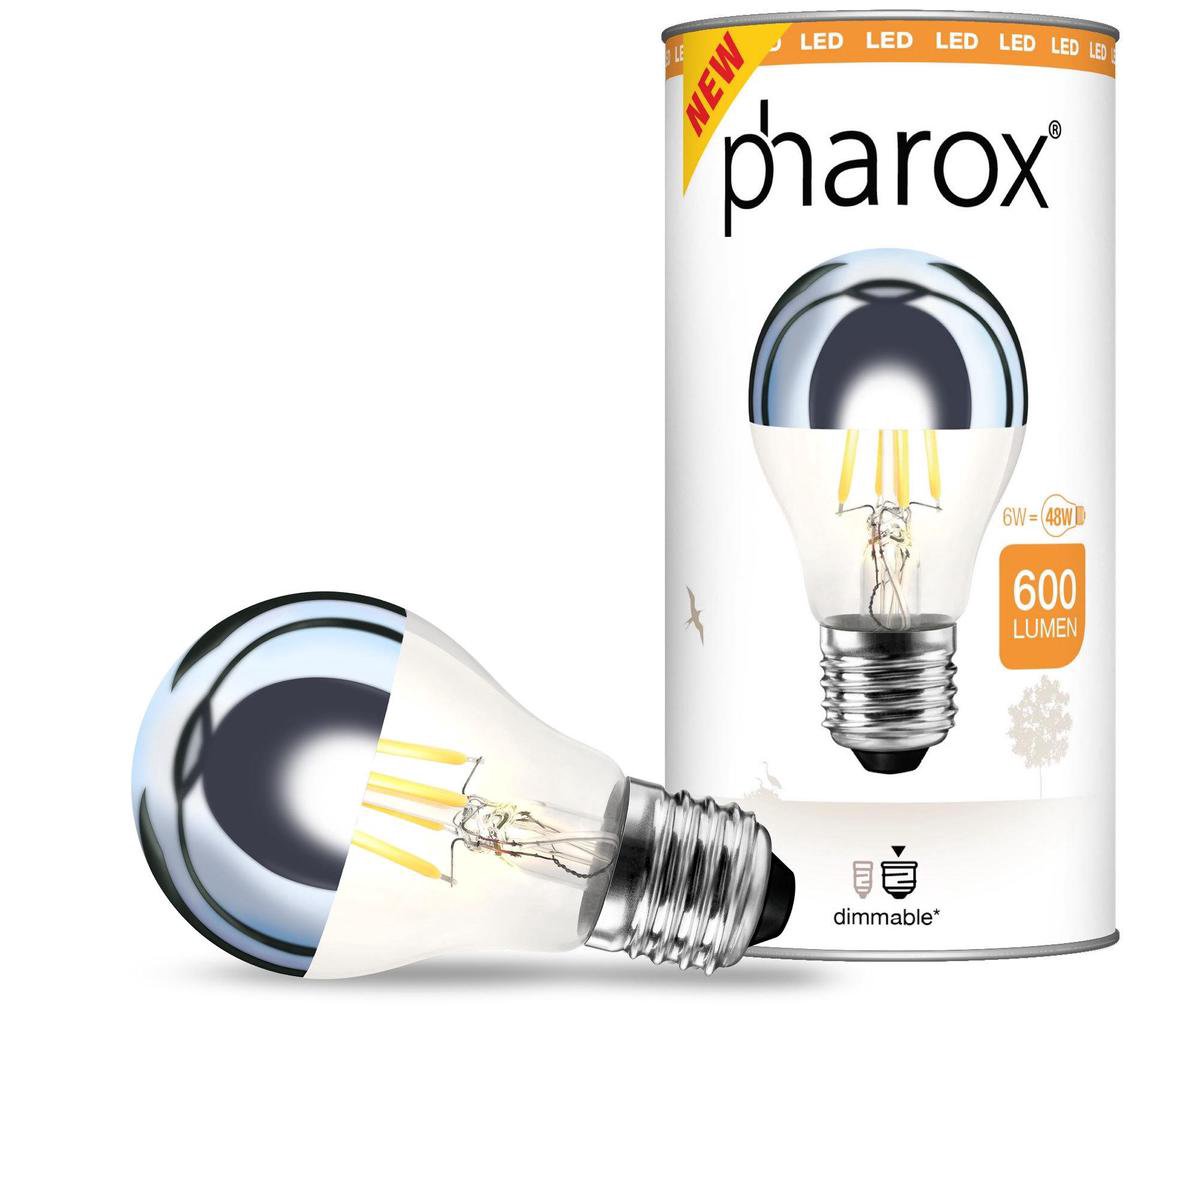 Lemnis Pharox Pharox LED lamp kopspiegel E27 6W 600 lumen | bol.com